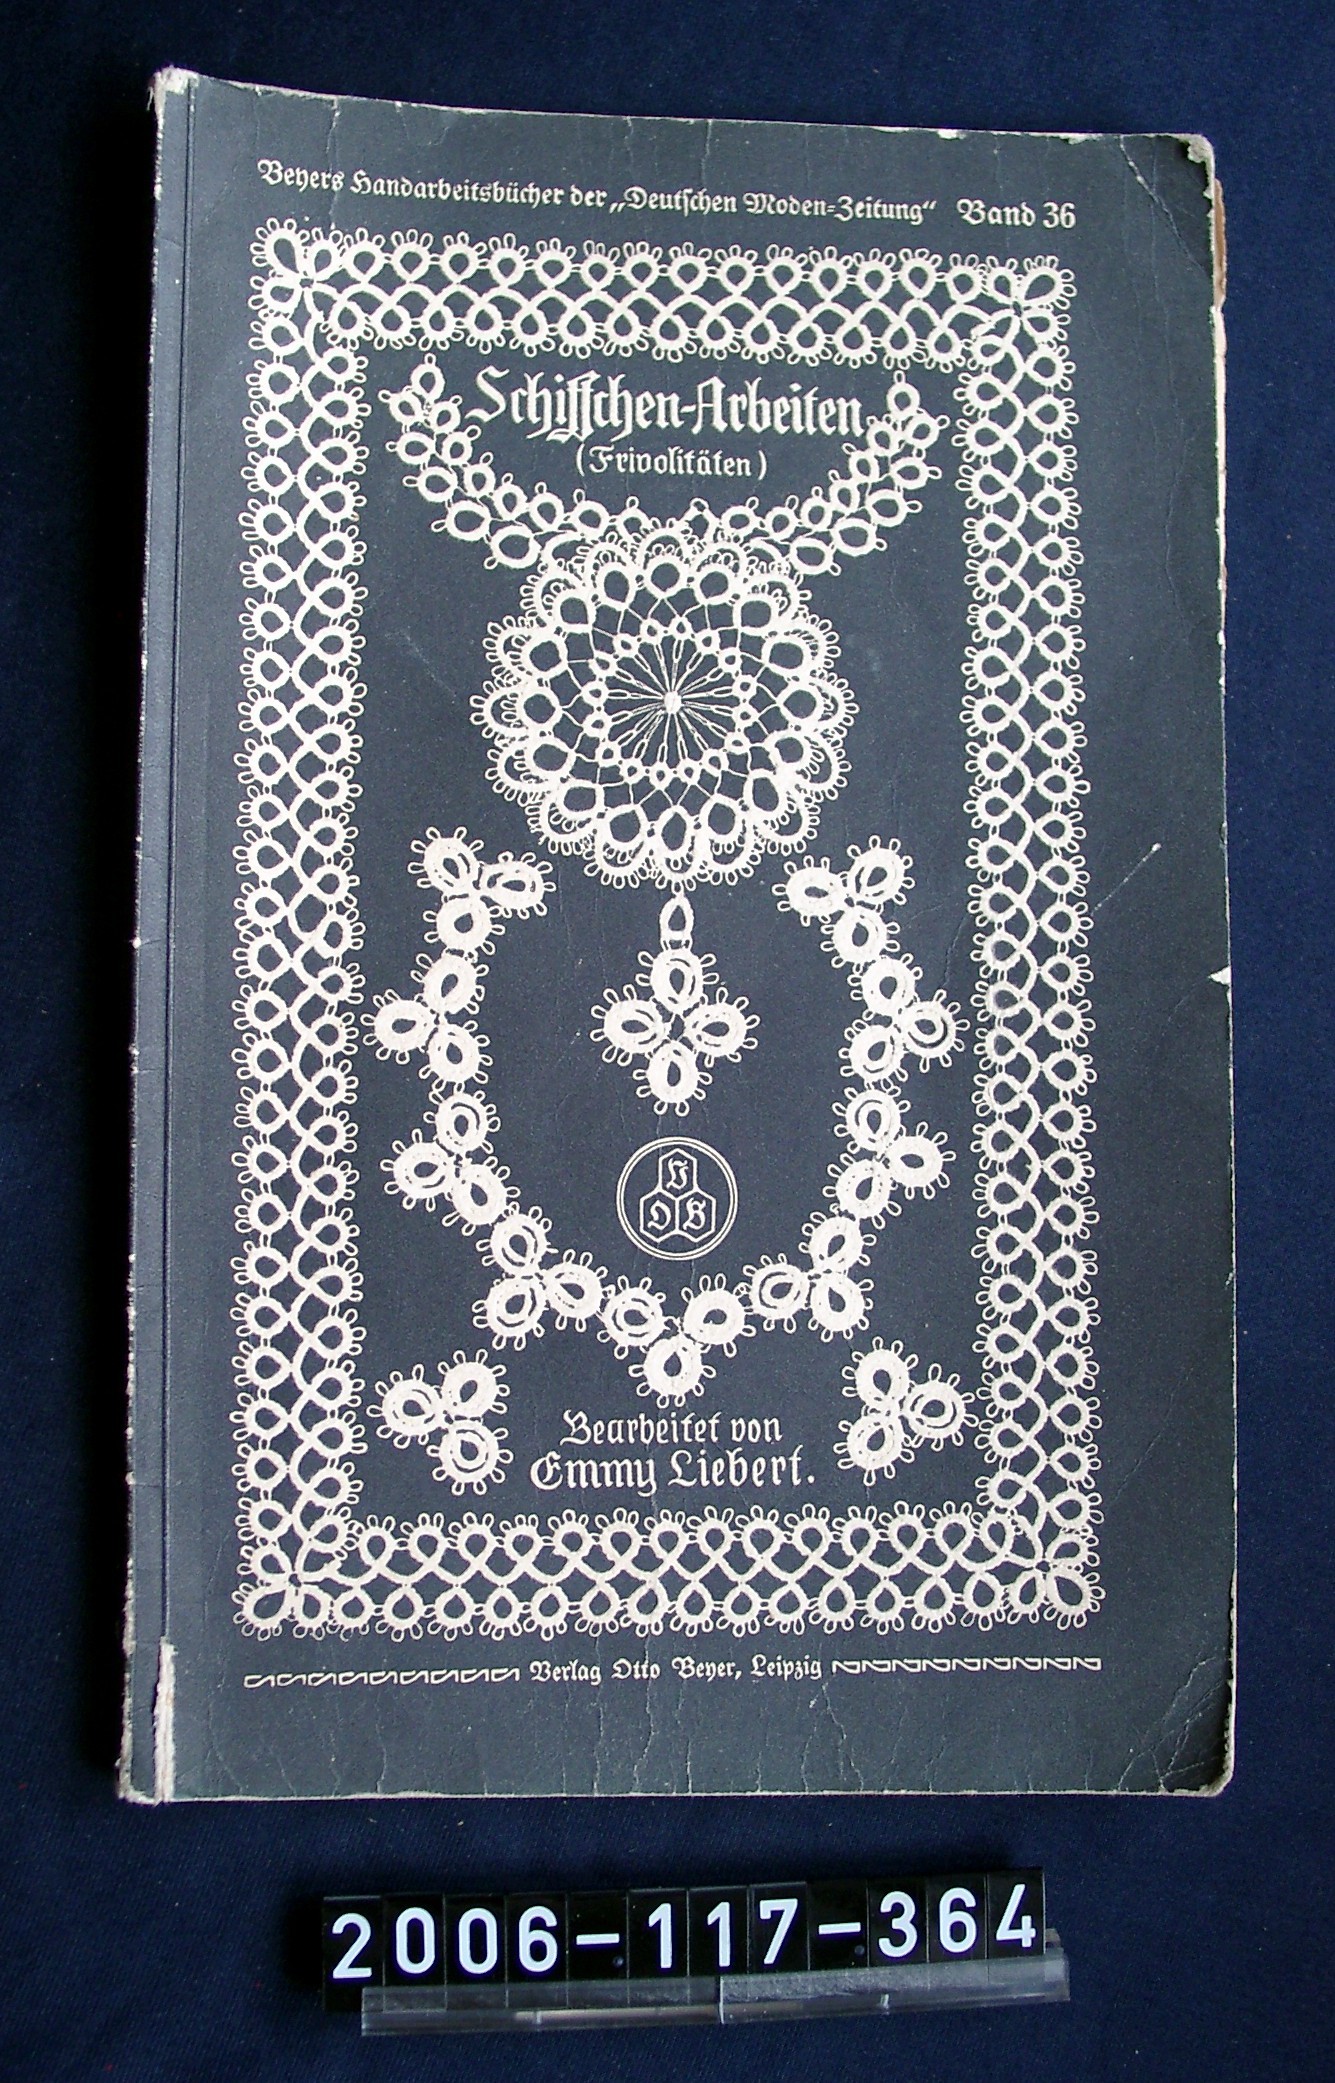 Handarbeitsbuch; um 1900 (Stadtmuseum Bad Dürkheim, Museumsgesellschaft Bad Dürkheim e.V. CC BY-NC-SA)